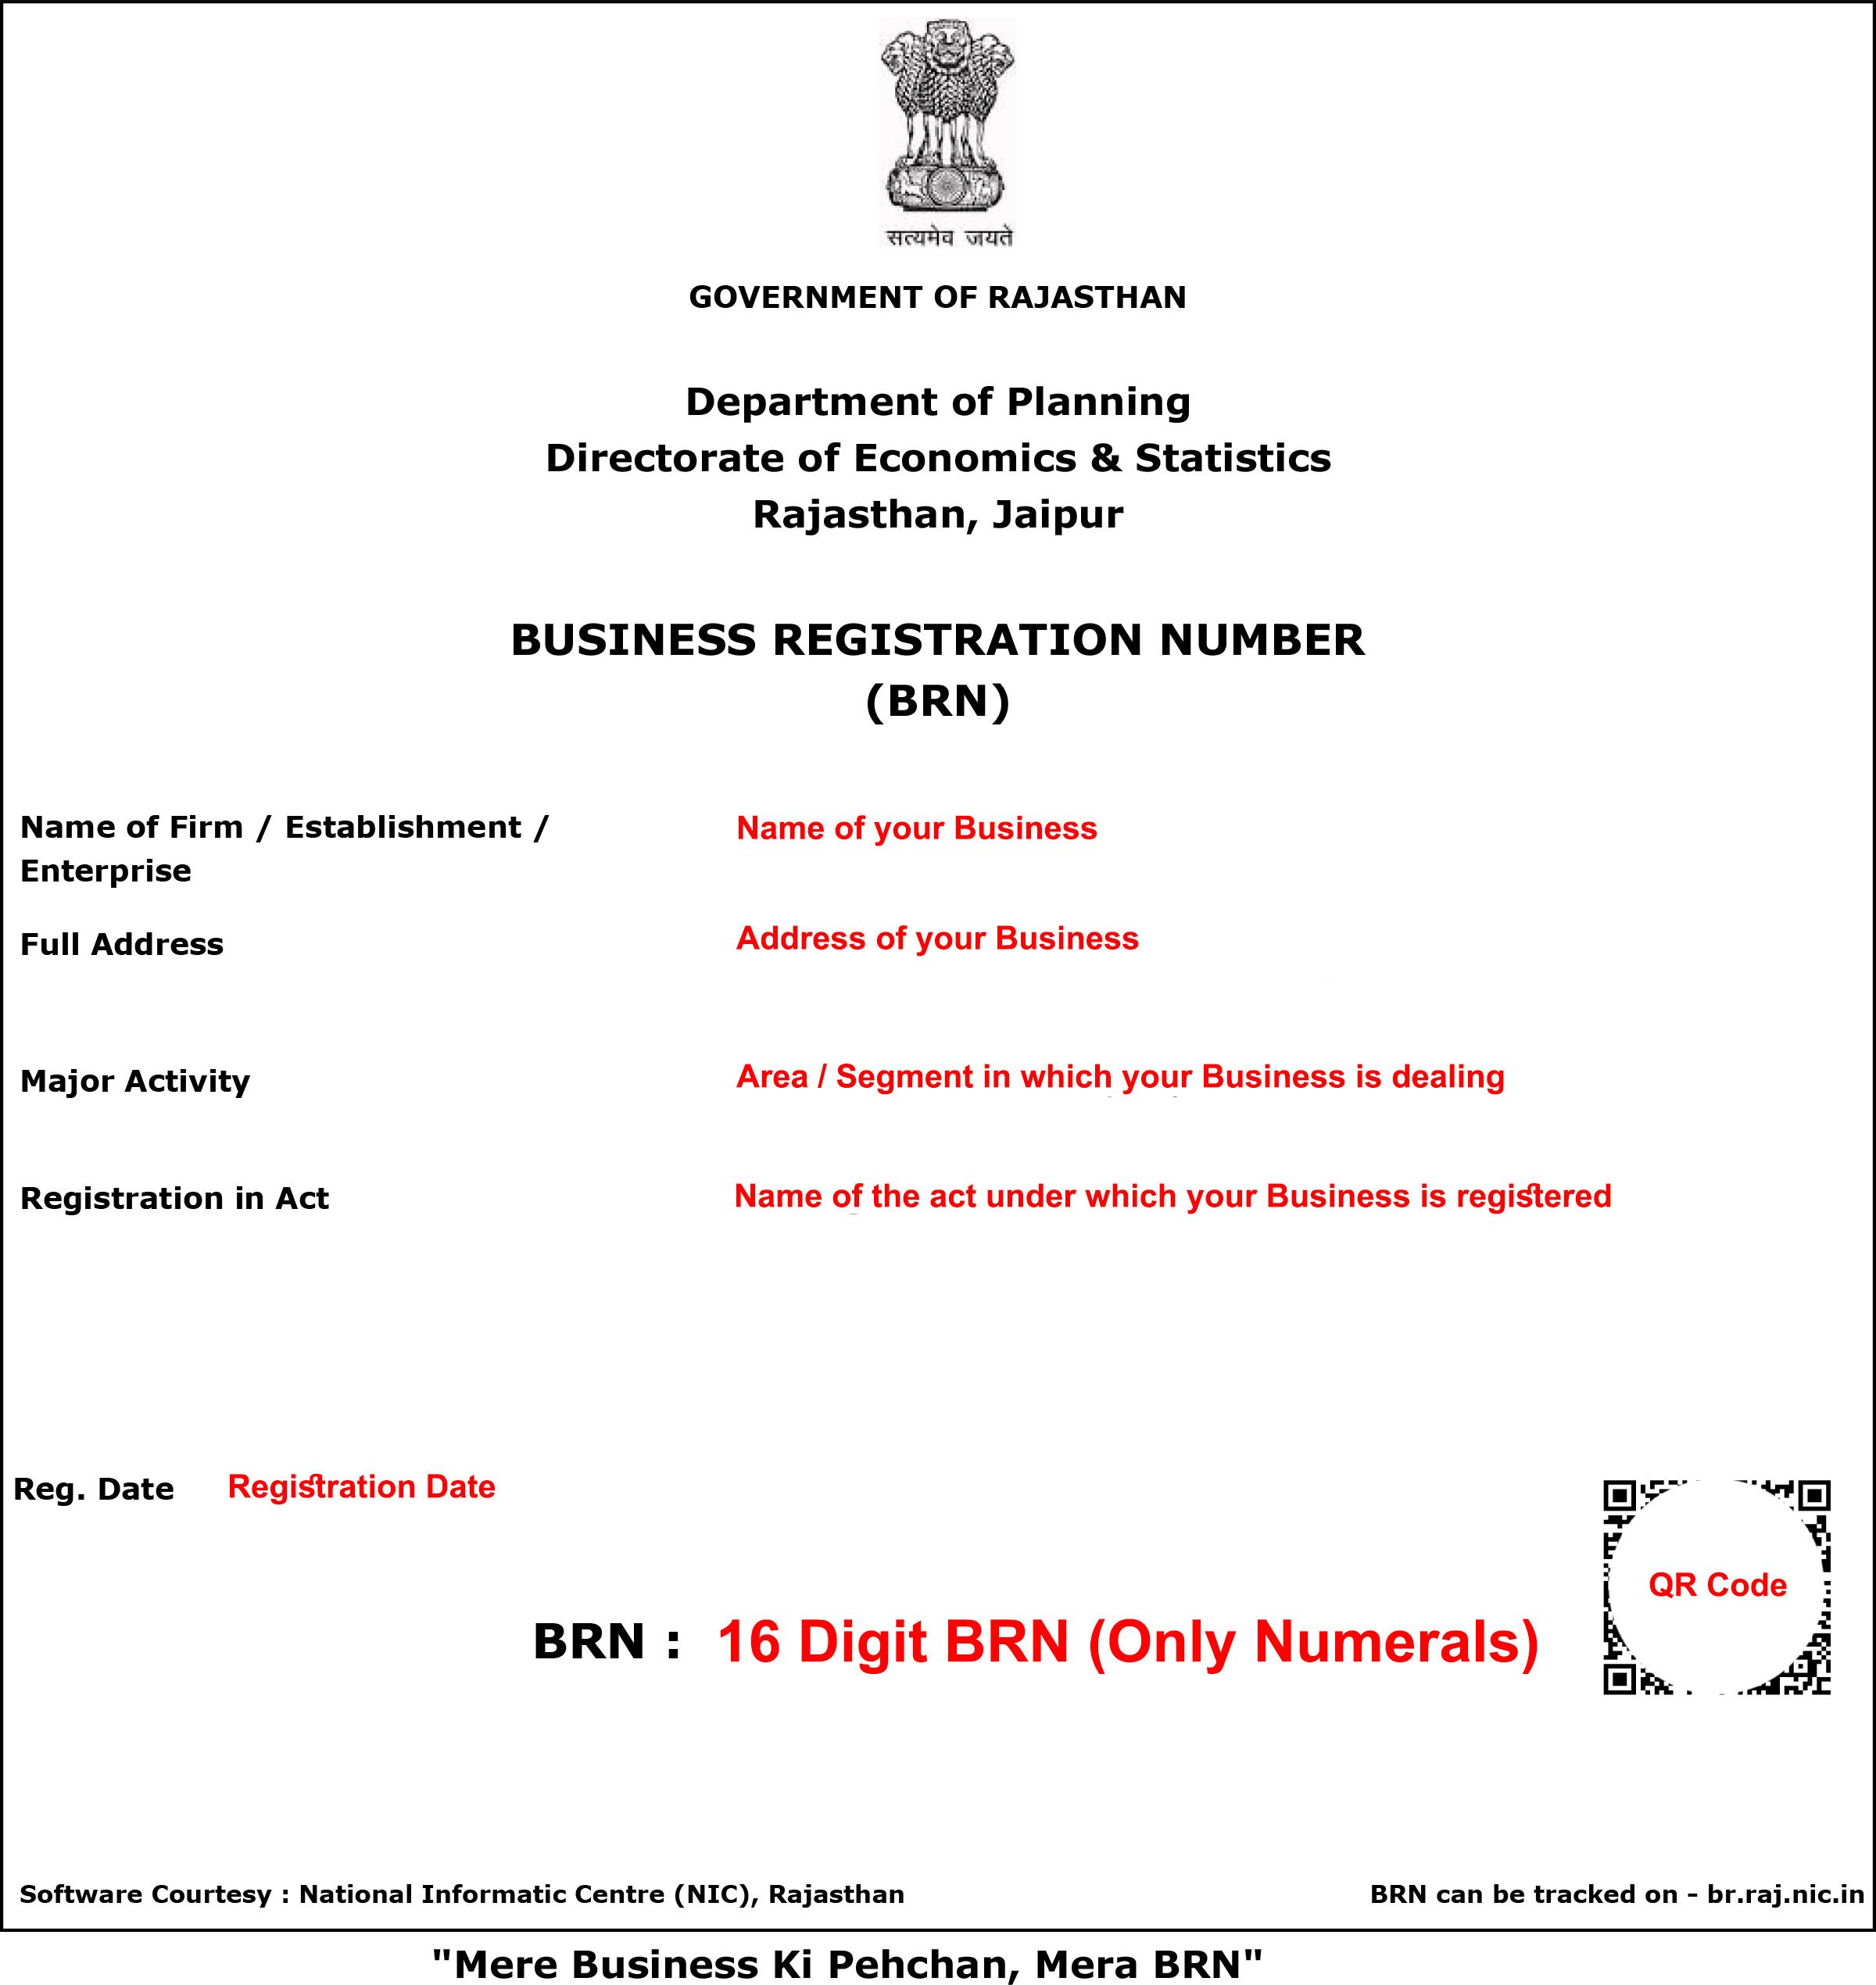 Sample Business Registration Number (BRN) Certificate